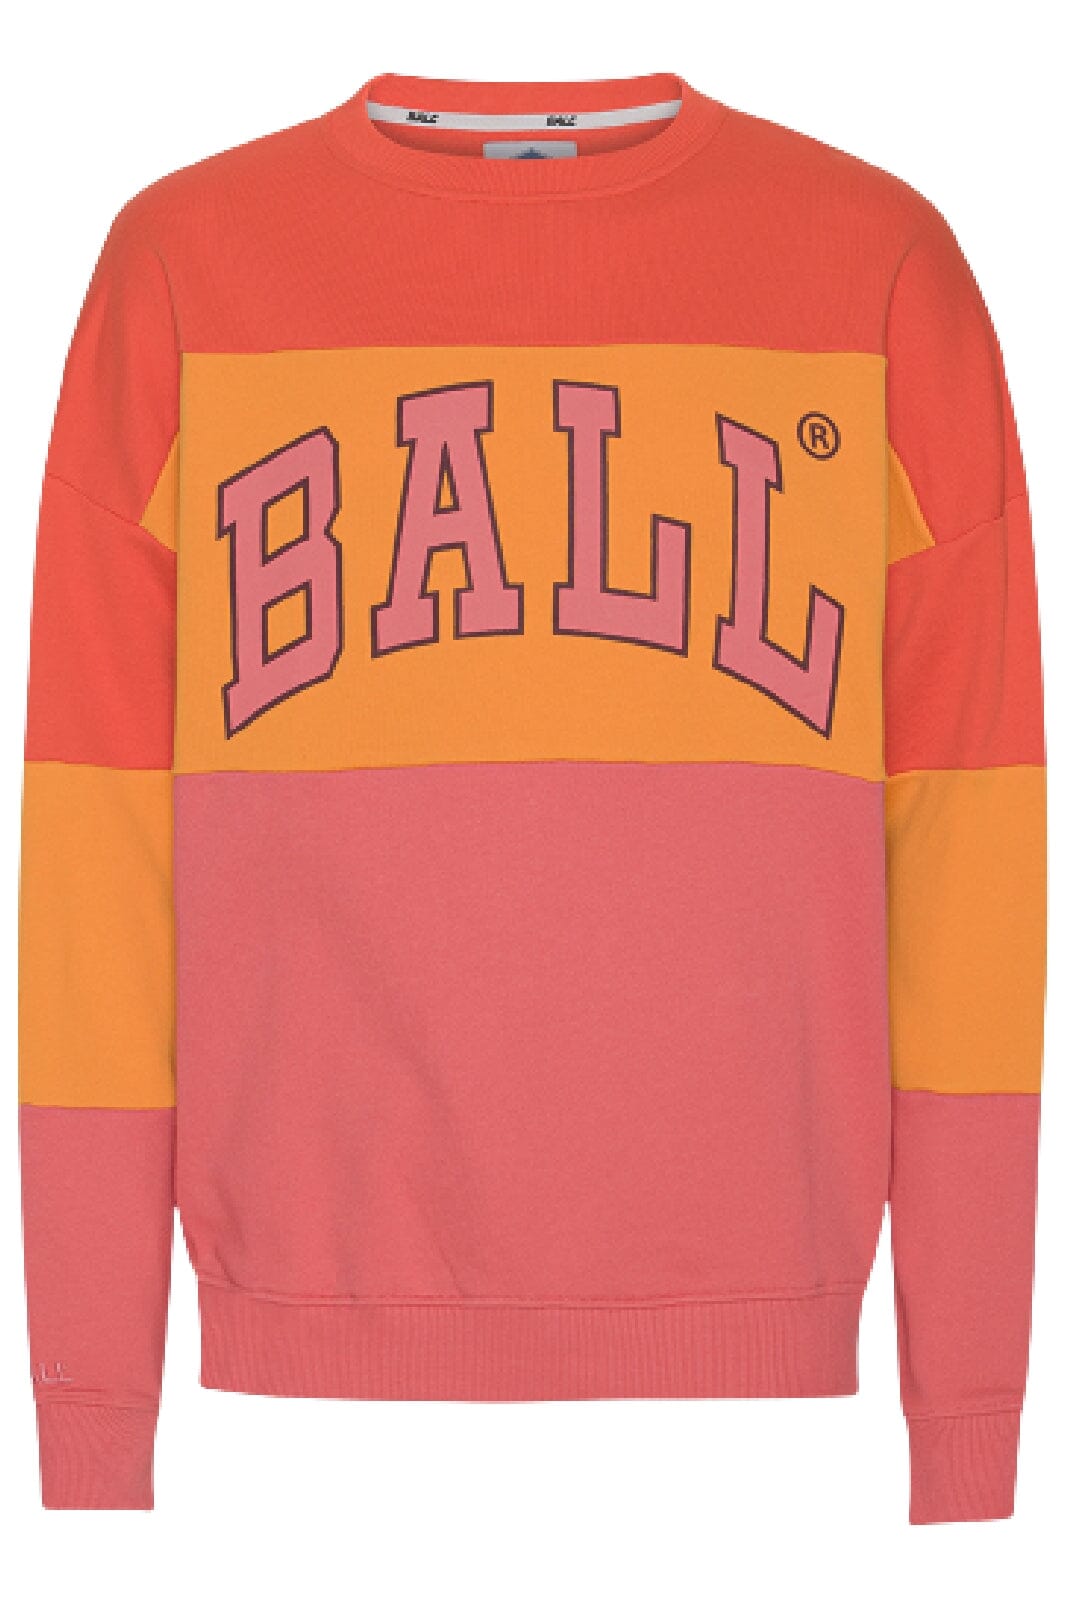 Ball - J. Robinson Multi - Tom/Rang/Roseh Sweatshirts 